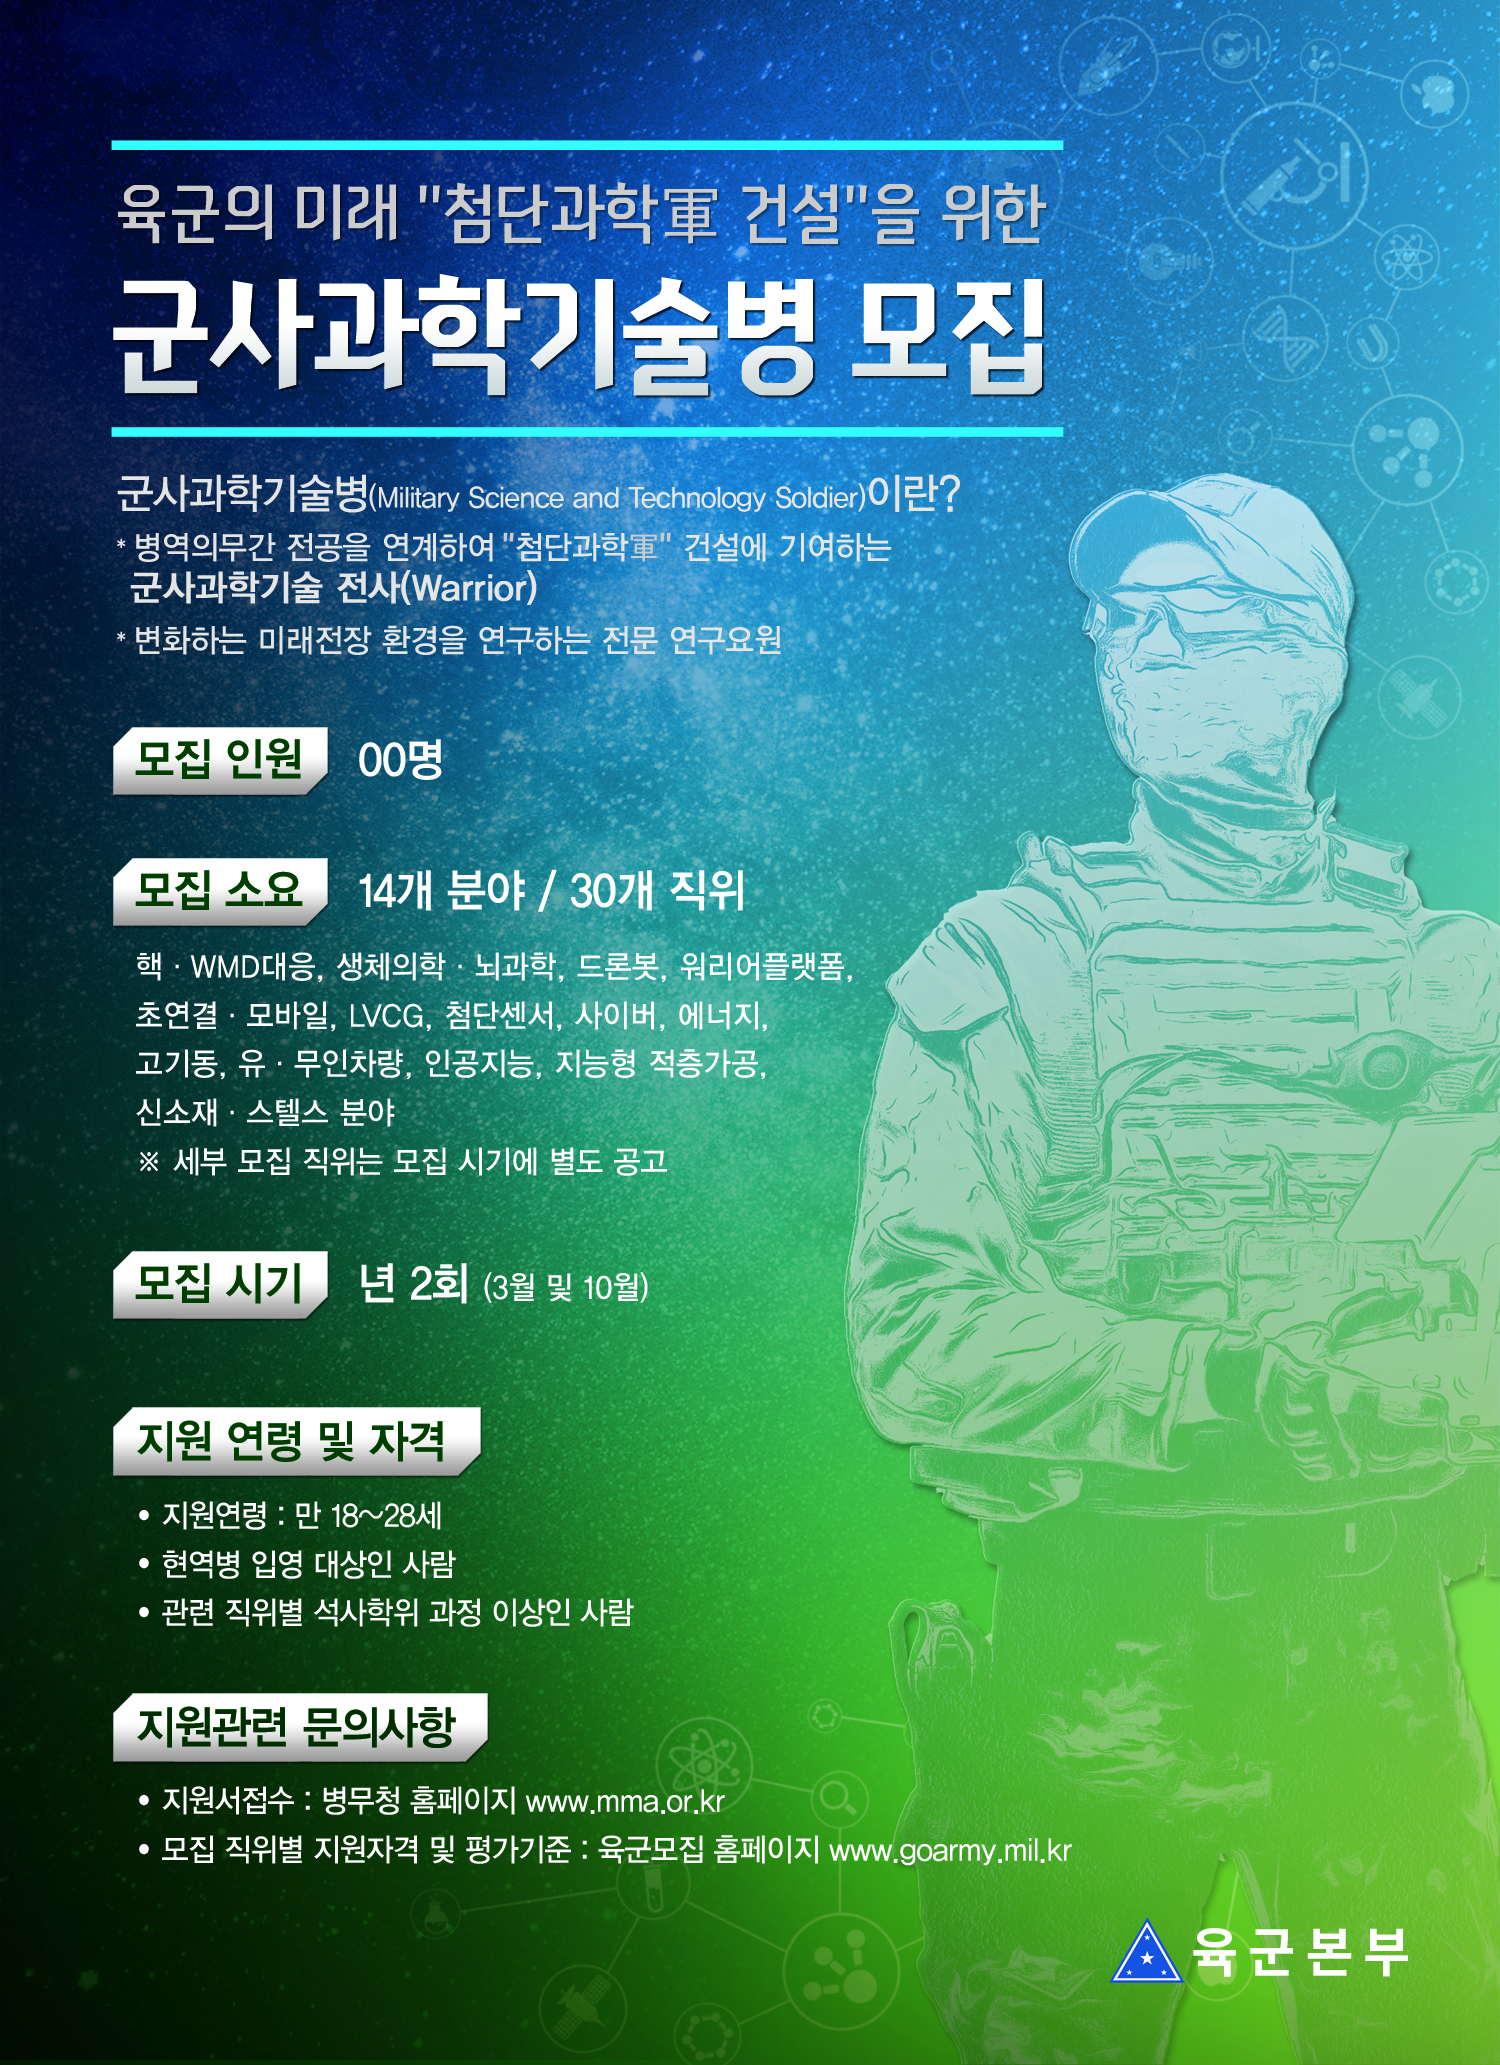 20-1차 군사과학기술병 포스터-저용량.jpg